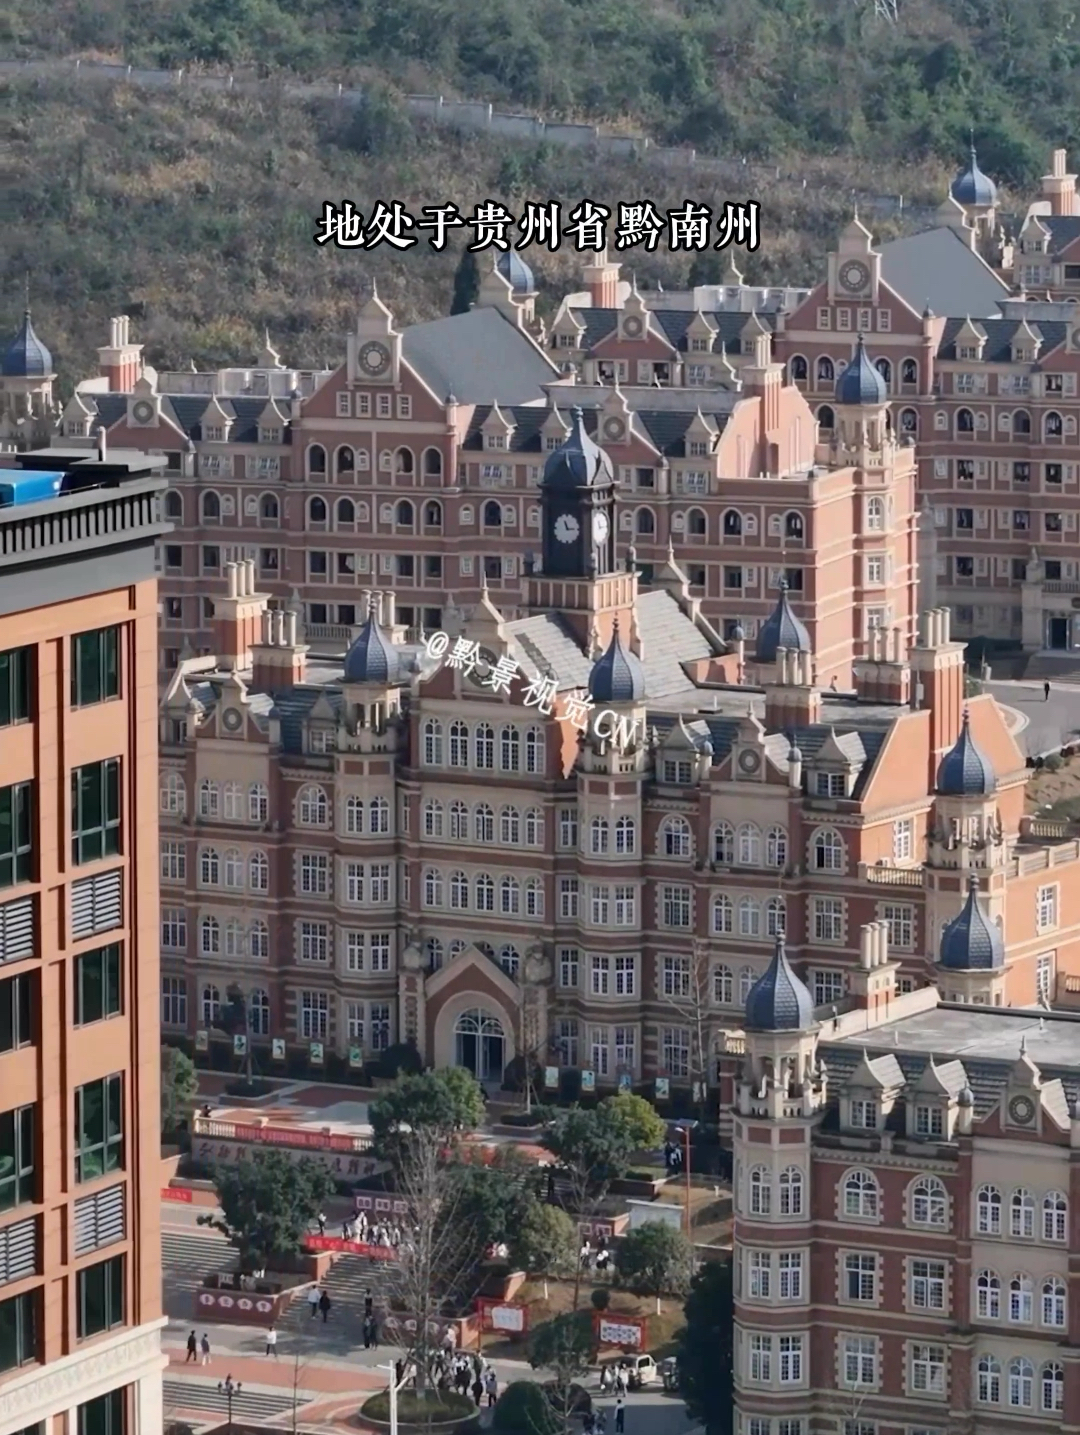 万万不敢相信，眼前这座城堡竟然是一所学校！地处贵州省黔南州， 住在里面的会是王子和公主吗？#城堡 #